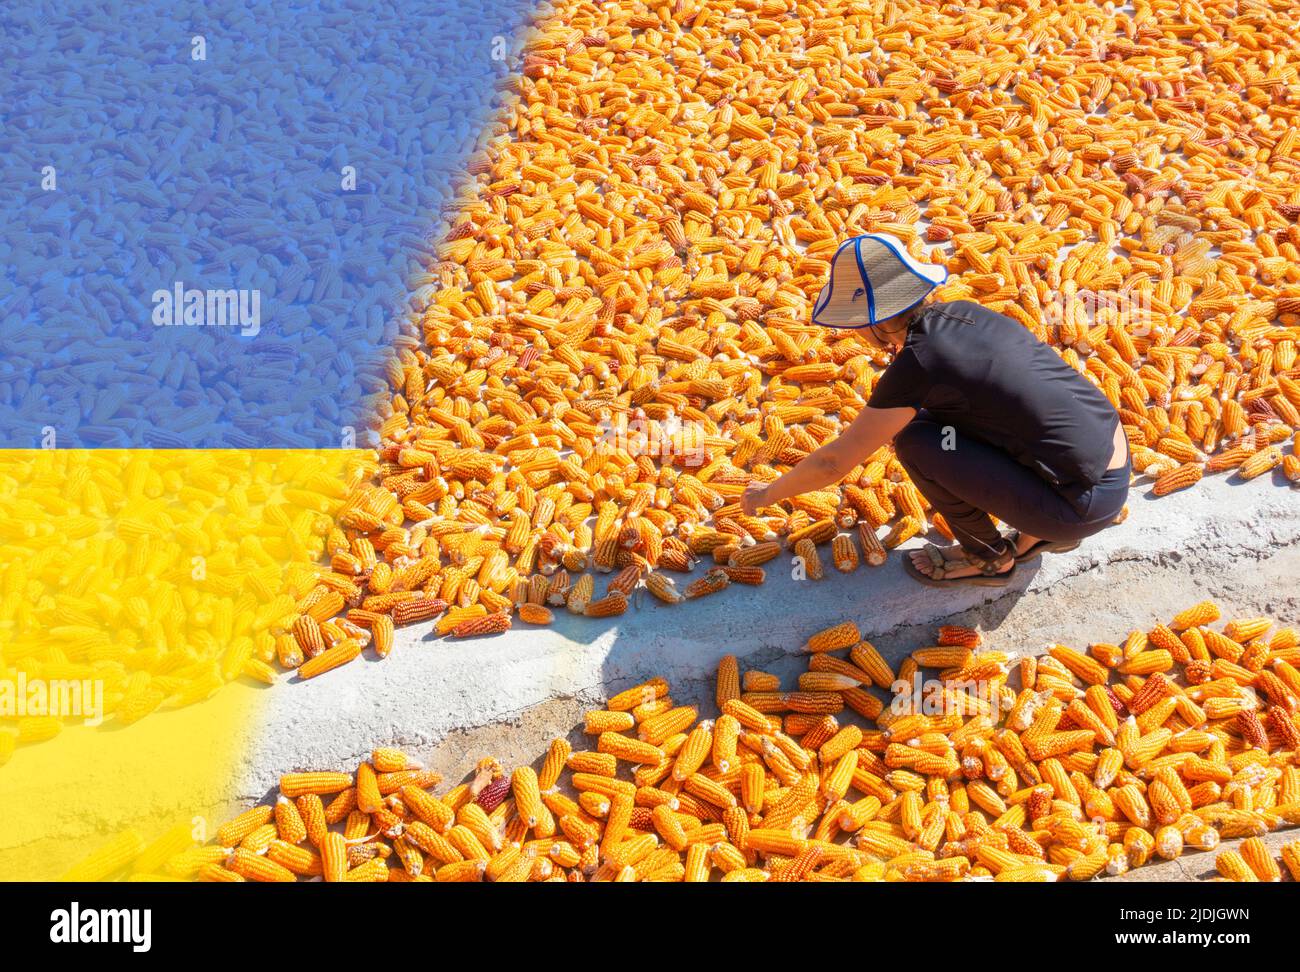 Femme séchant du maïs avec drapeau de l'Ukraine se chevauchant. Ukraine Russie guerre, conflit, hausse des prix des denrées alimentaires, pénurie de main-d'œuvre, sanctions... concept Banque D'Images